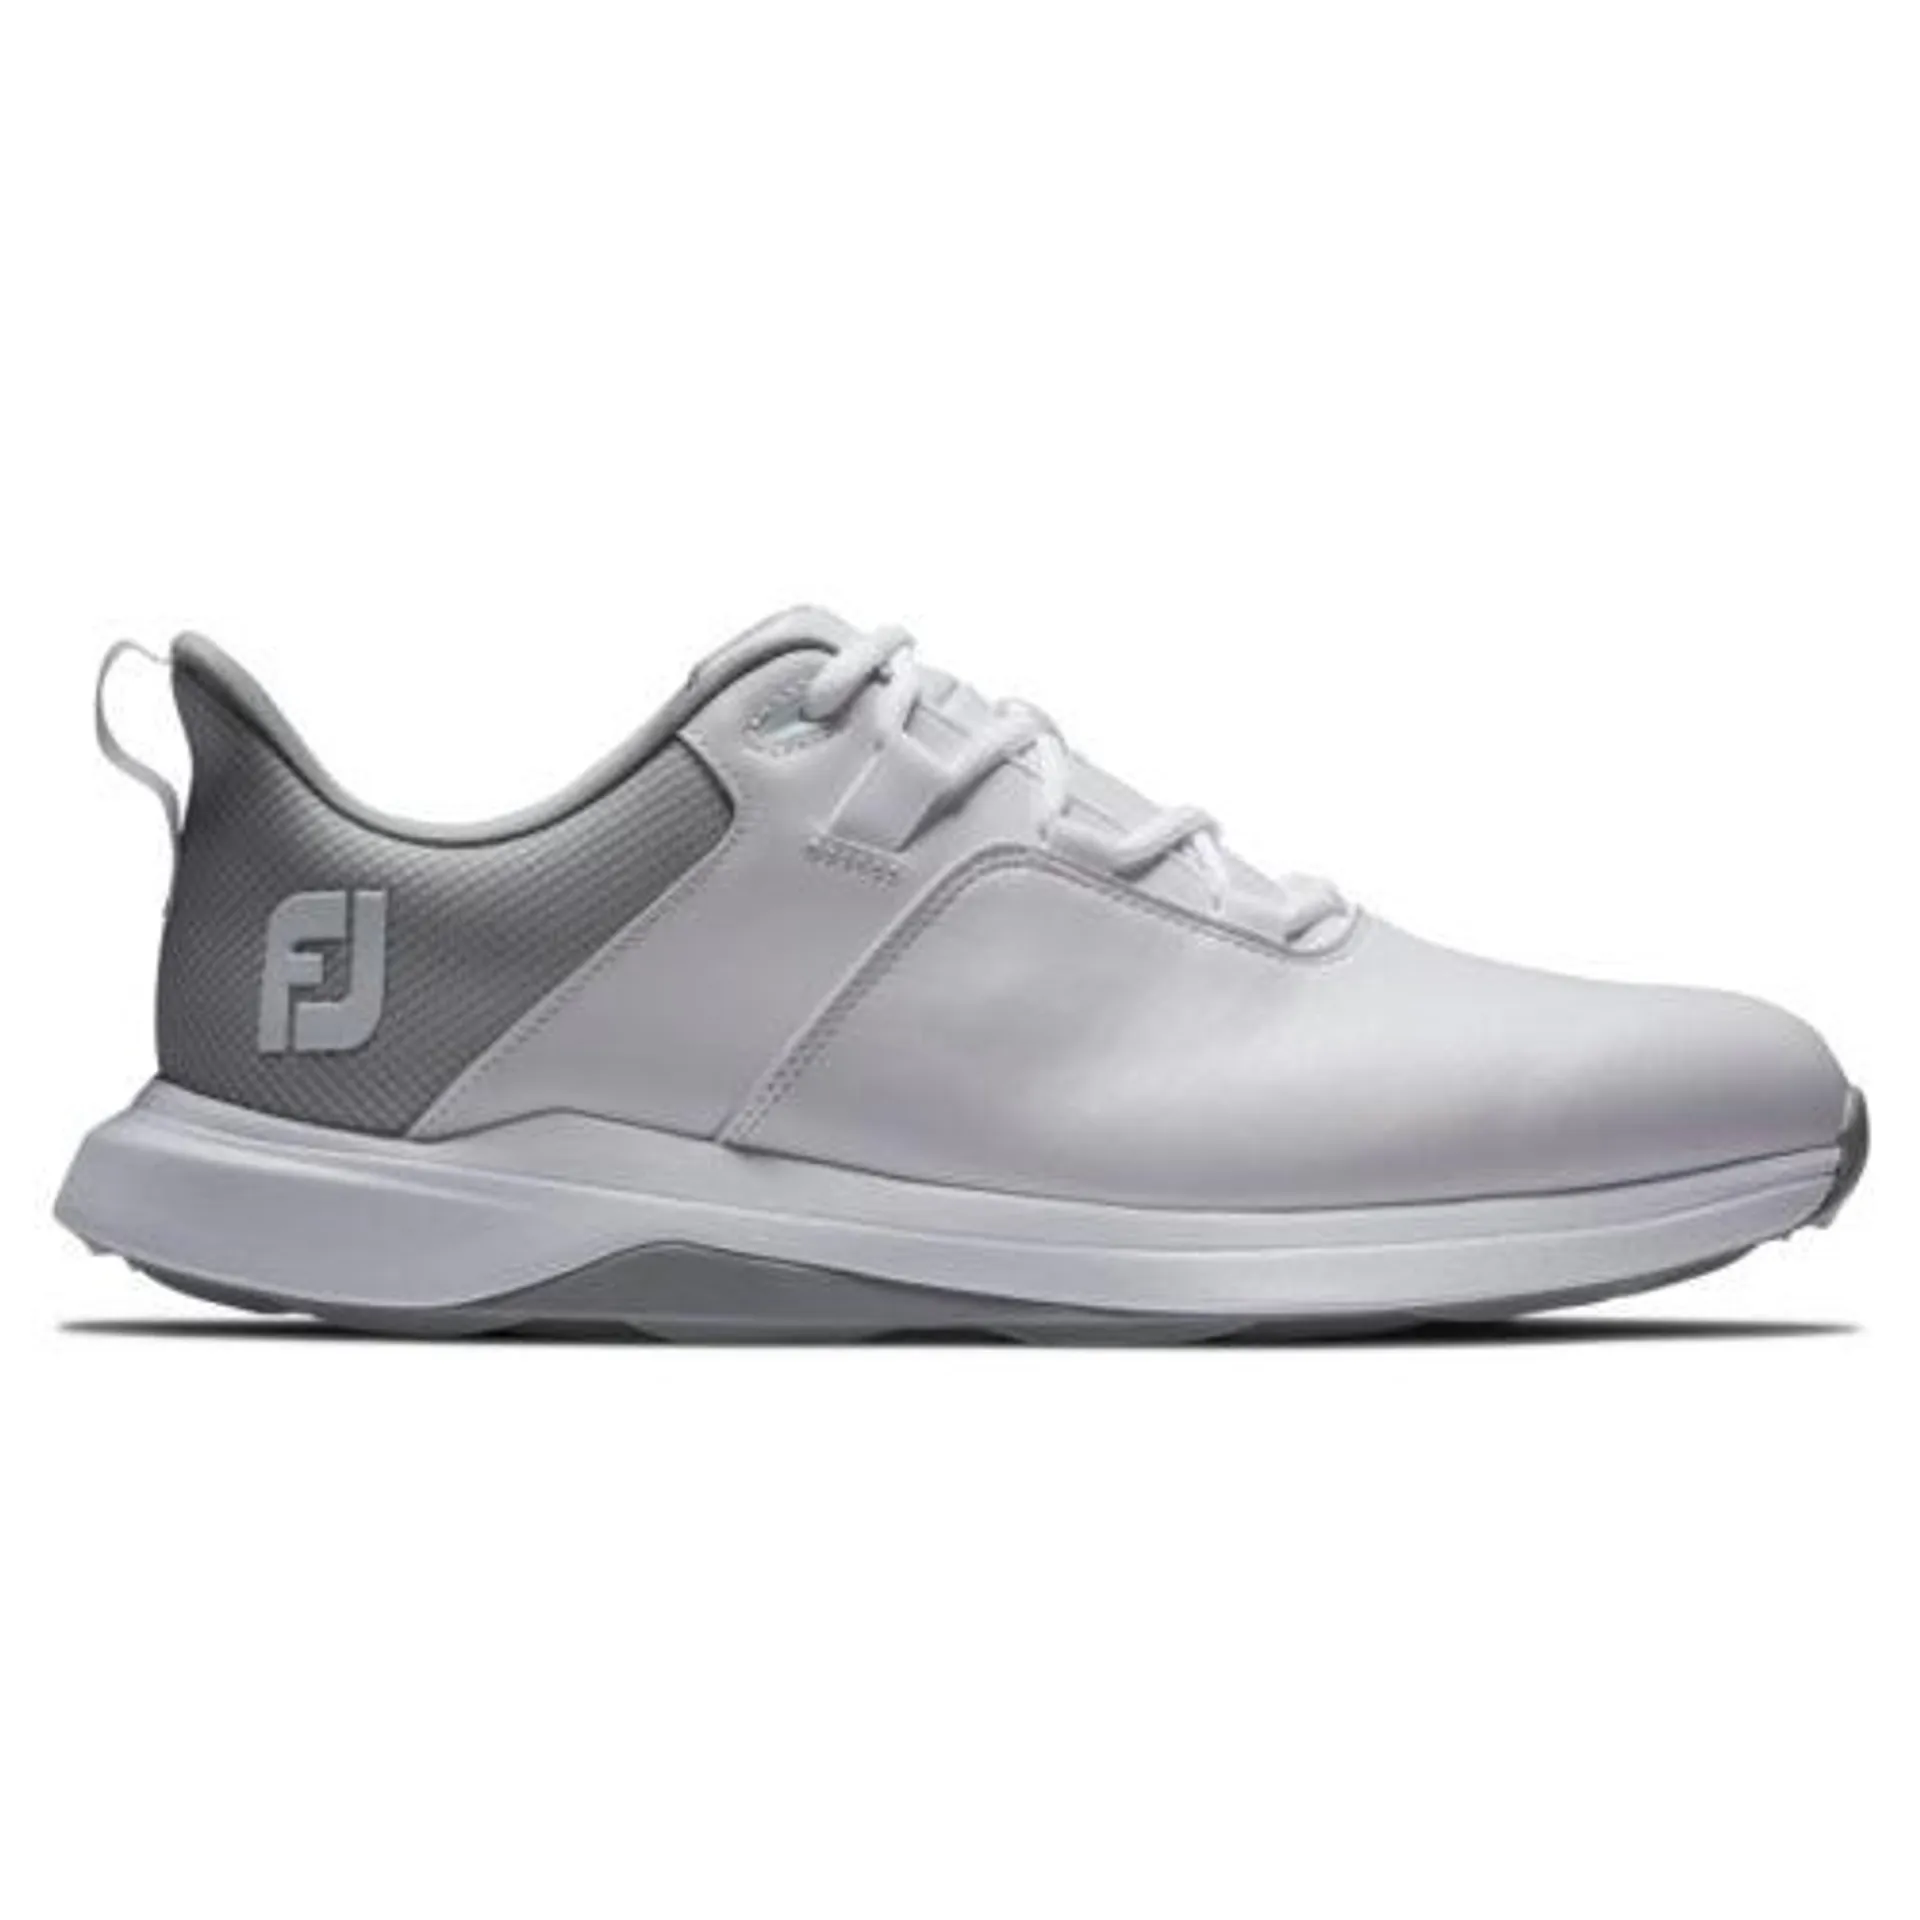 FootJoy Prolite Shoes – White/Grey 56924